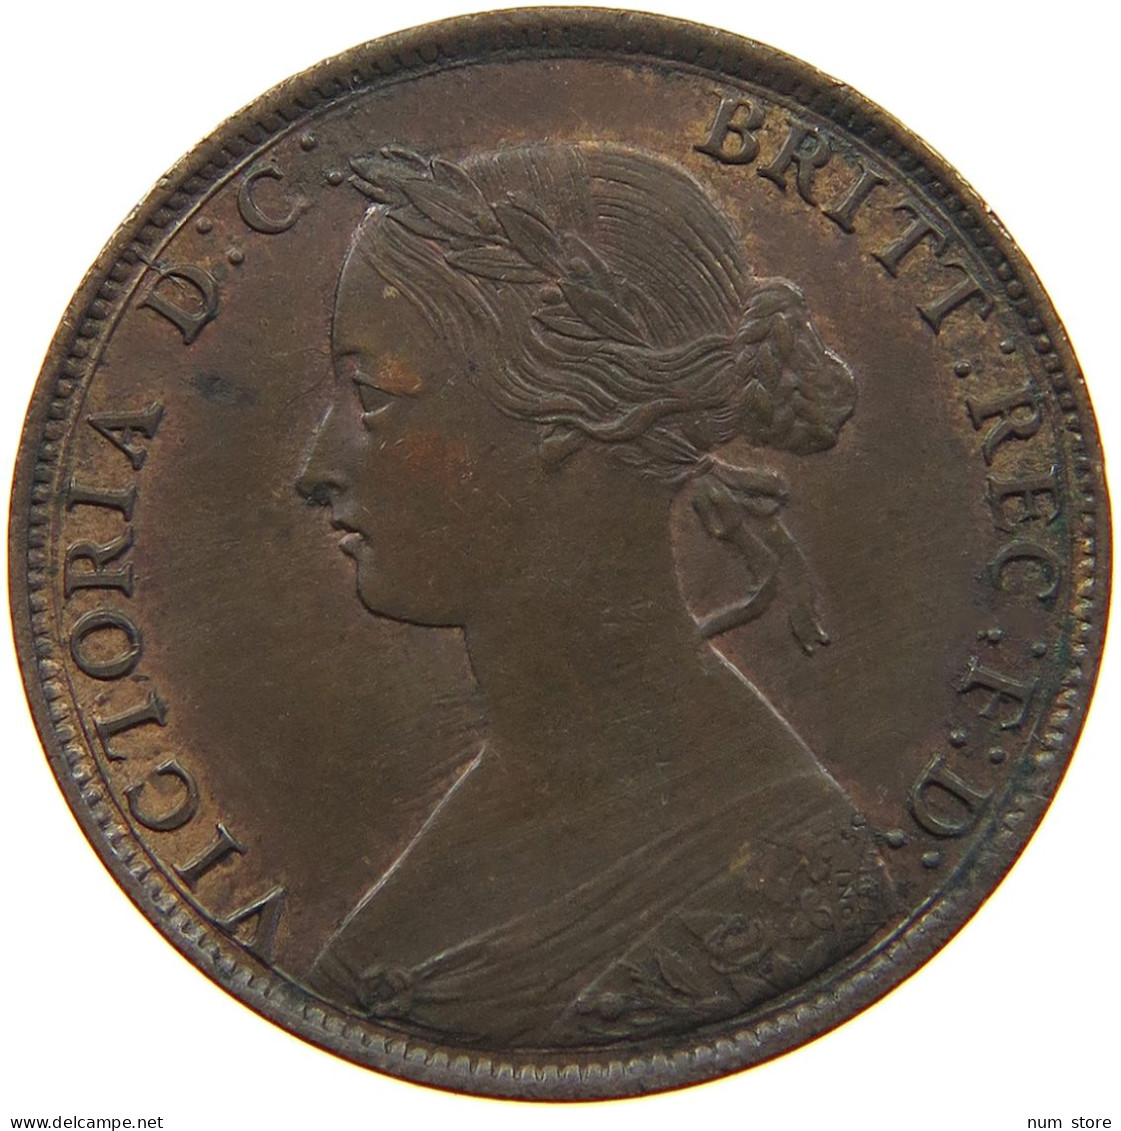 GREAT BRITAIN HALF PENNY 1861 Victoria 1837-1901 #t077 0387 - C. 1/2 Penny